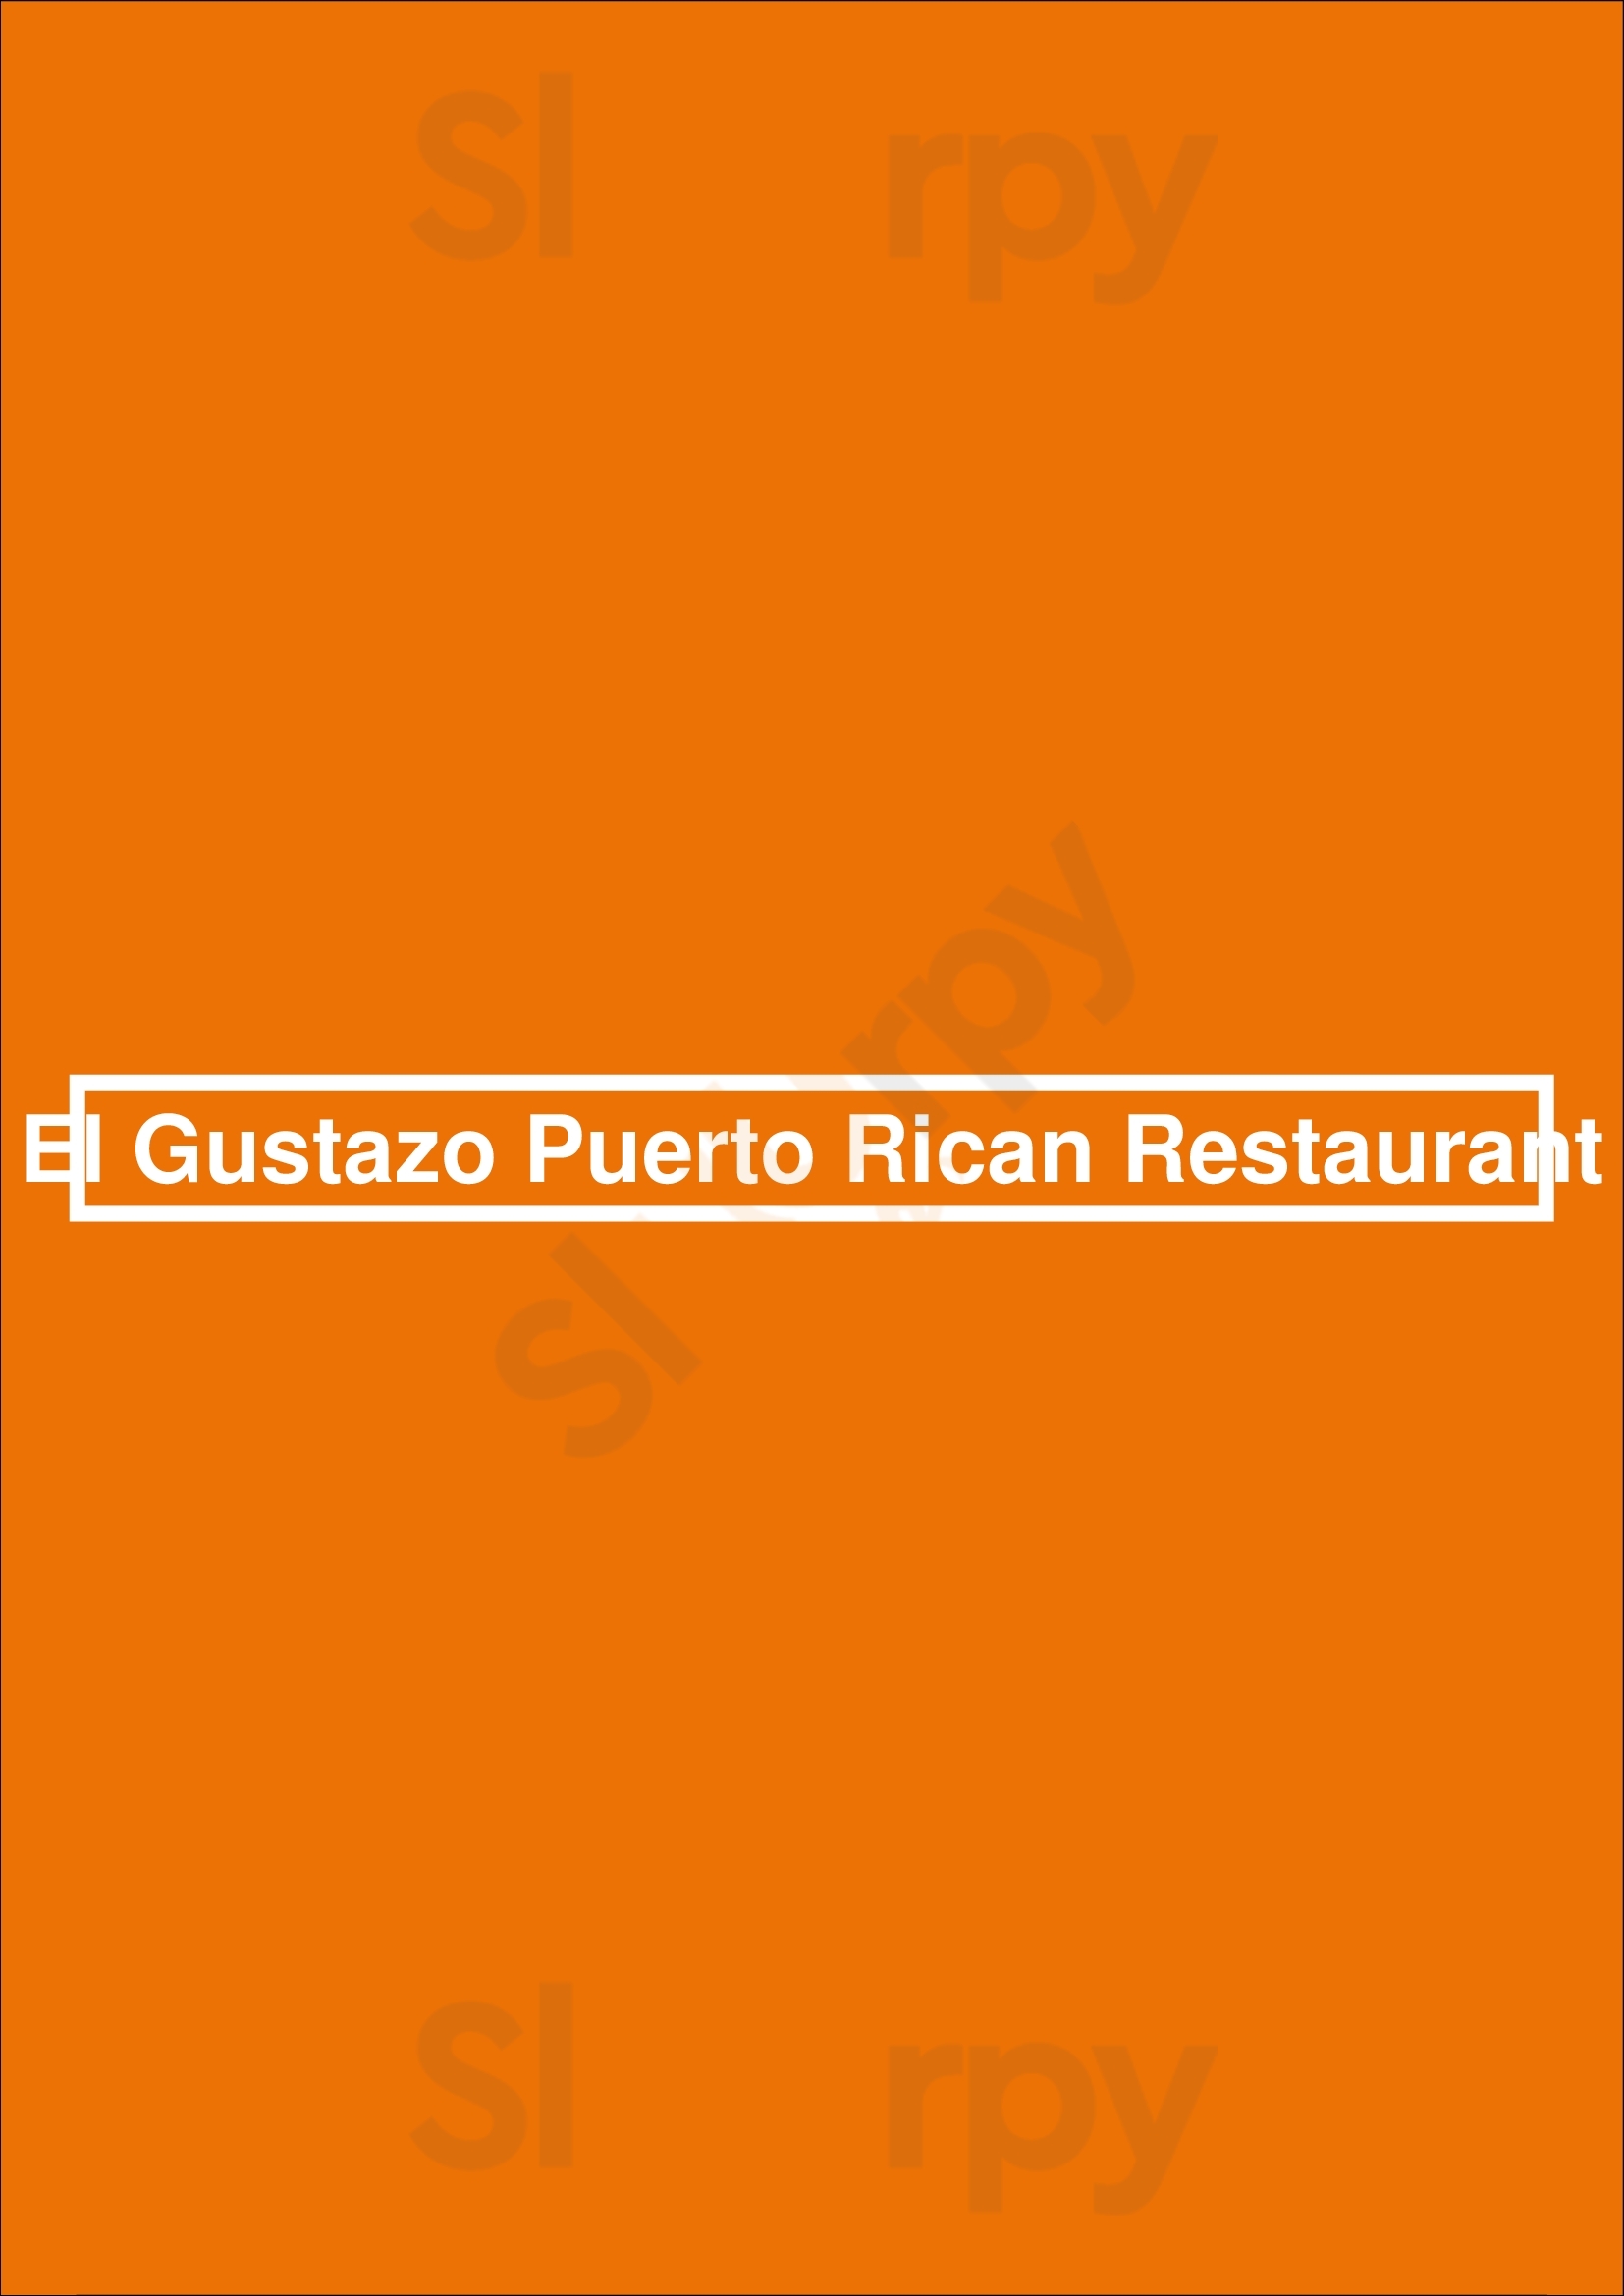 El Gustazo Puerto Rican Restaurant Racine Menu - 1